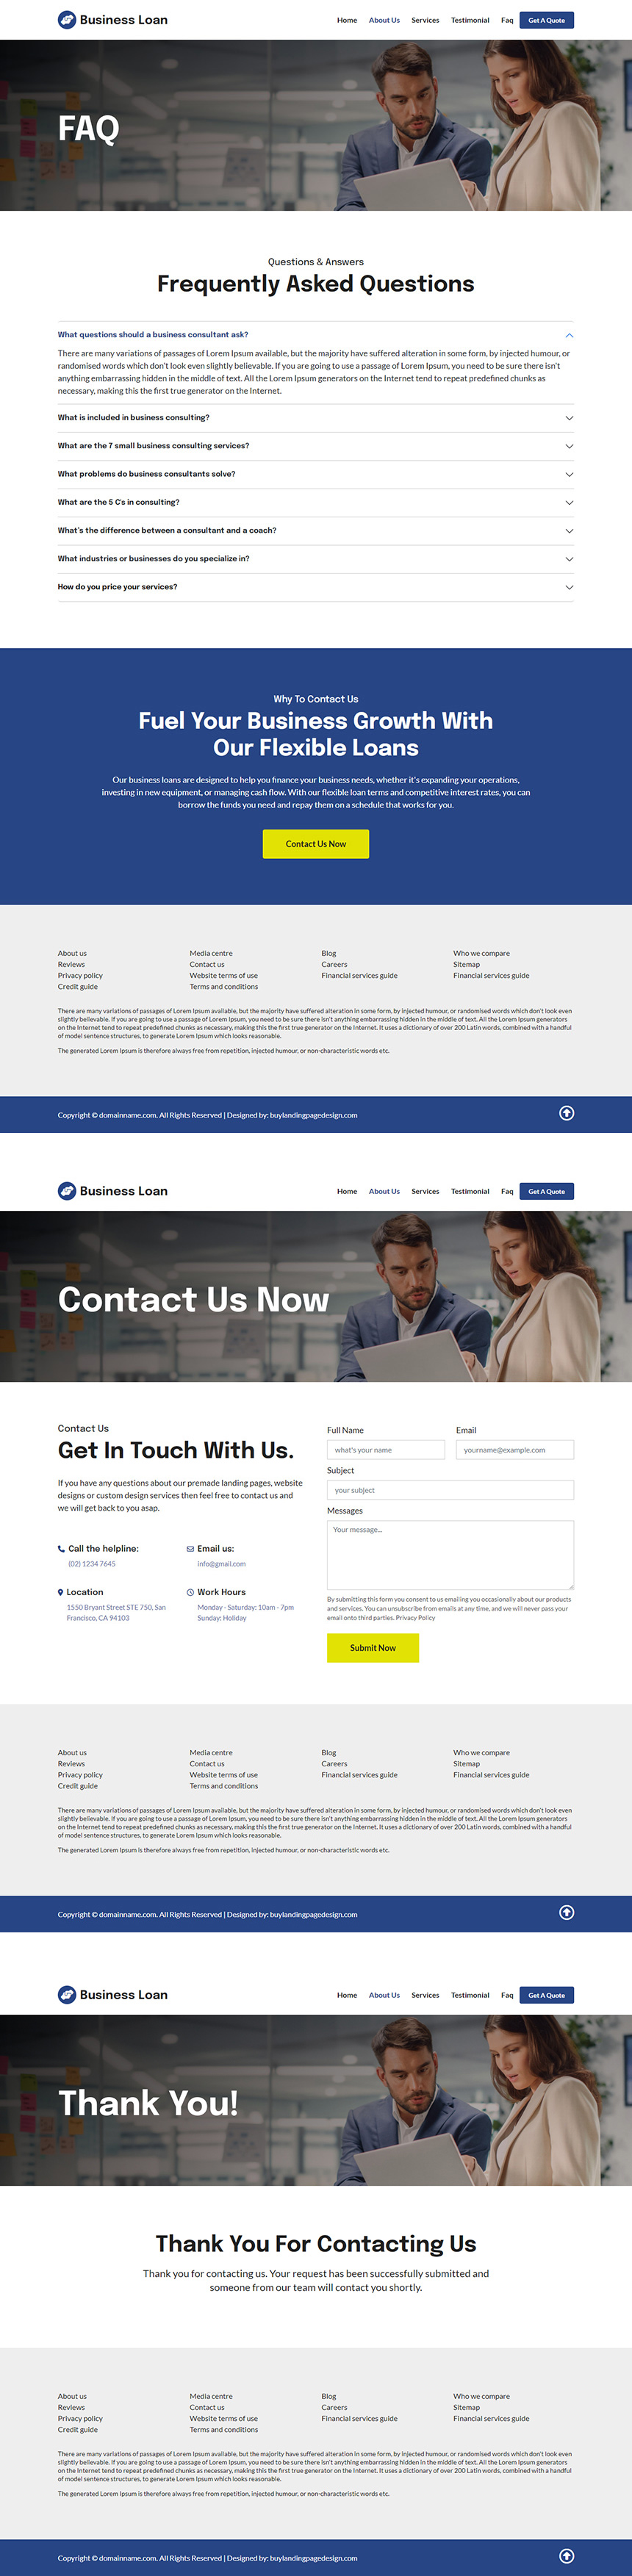 afforable business loans responsive website design